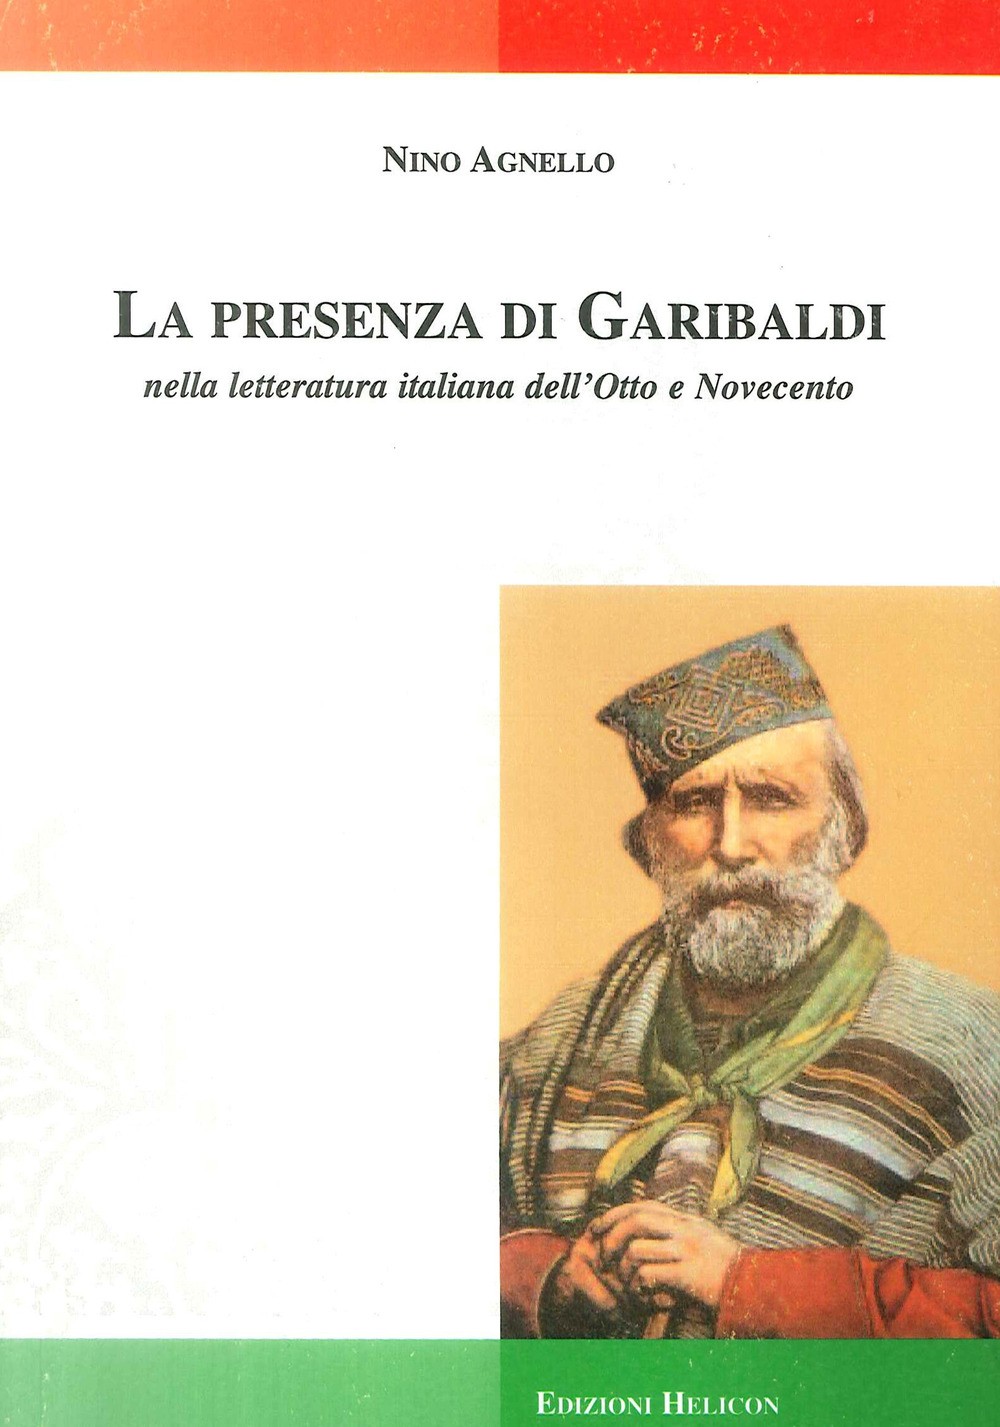 La presenza di Garibaldi nella letteratura italiana dell'Otto e Novecento